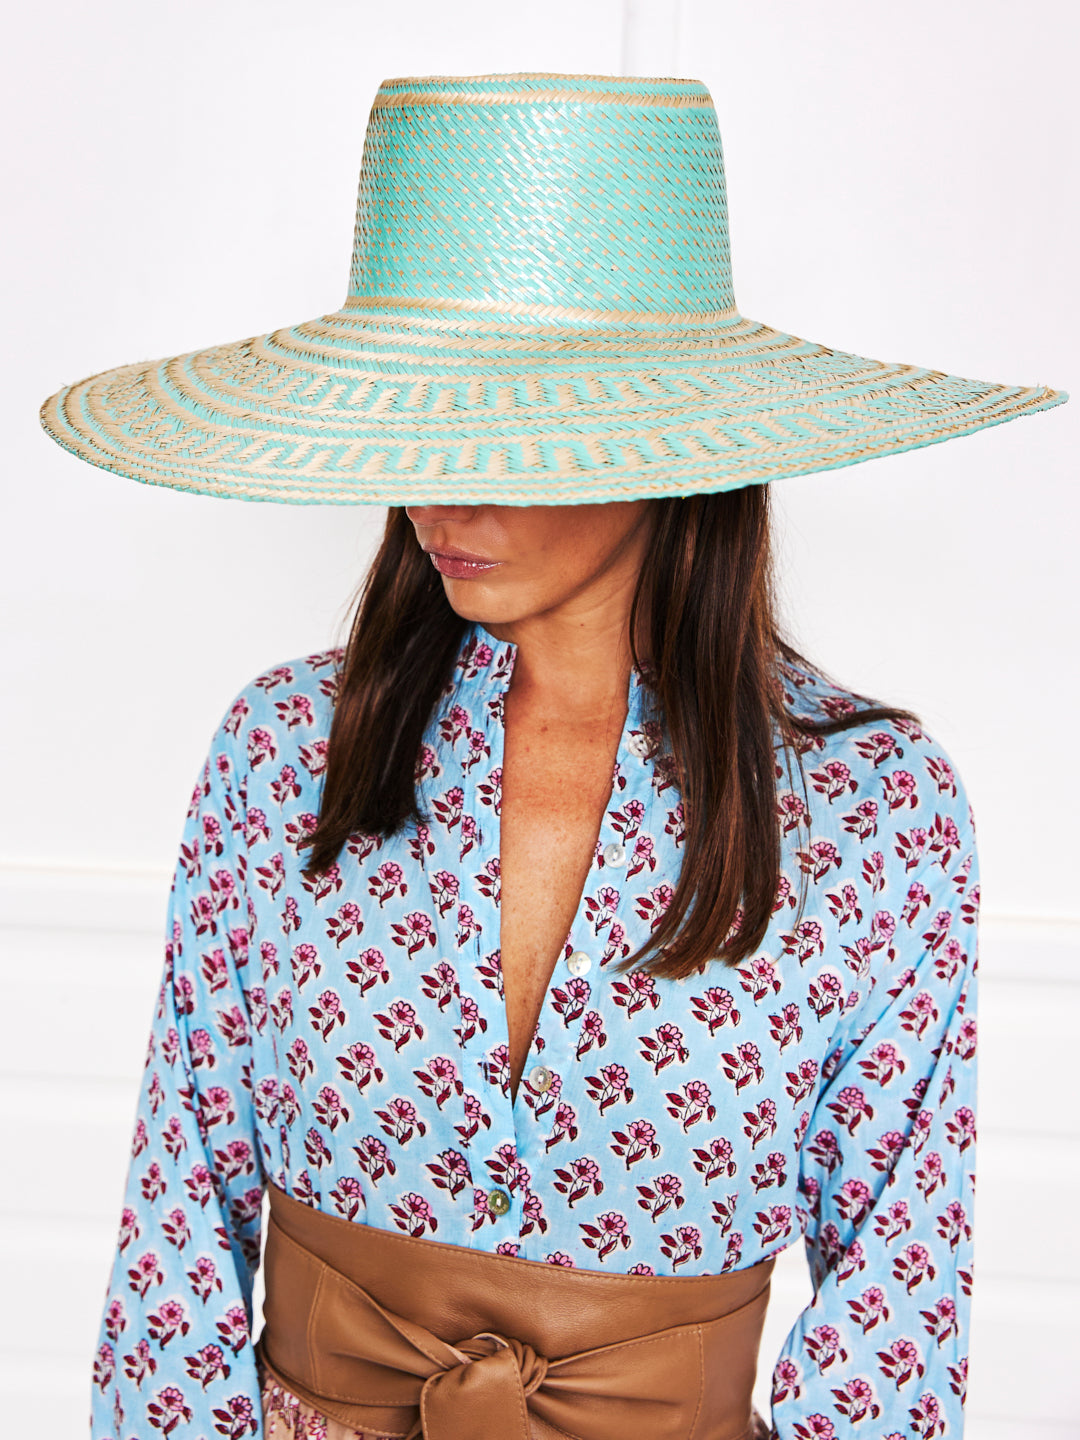 Colombian Woven Sun Hats - Aqua